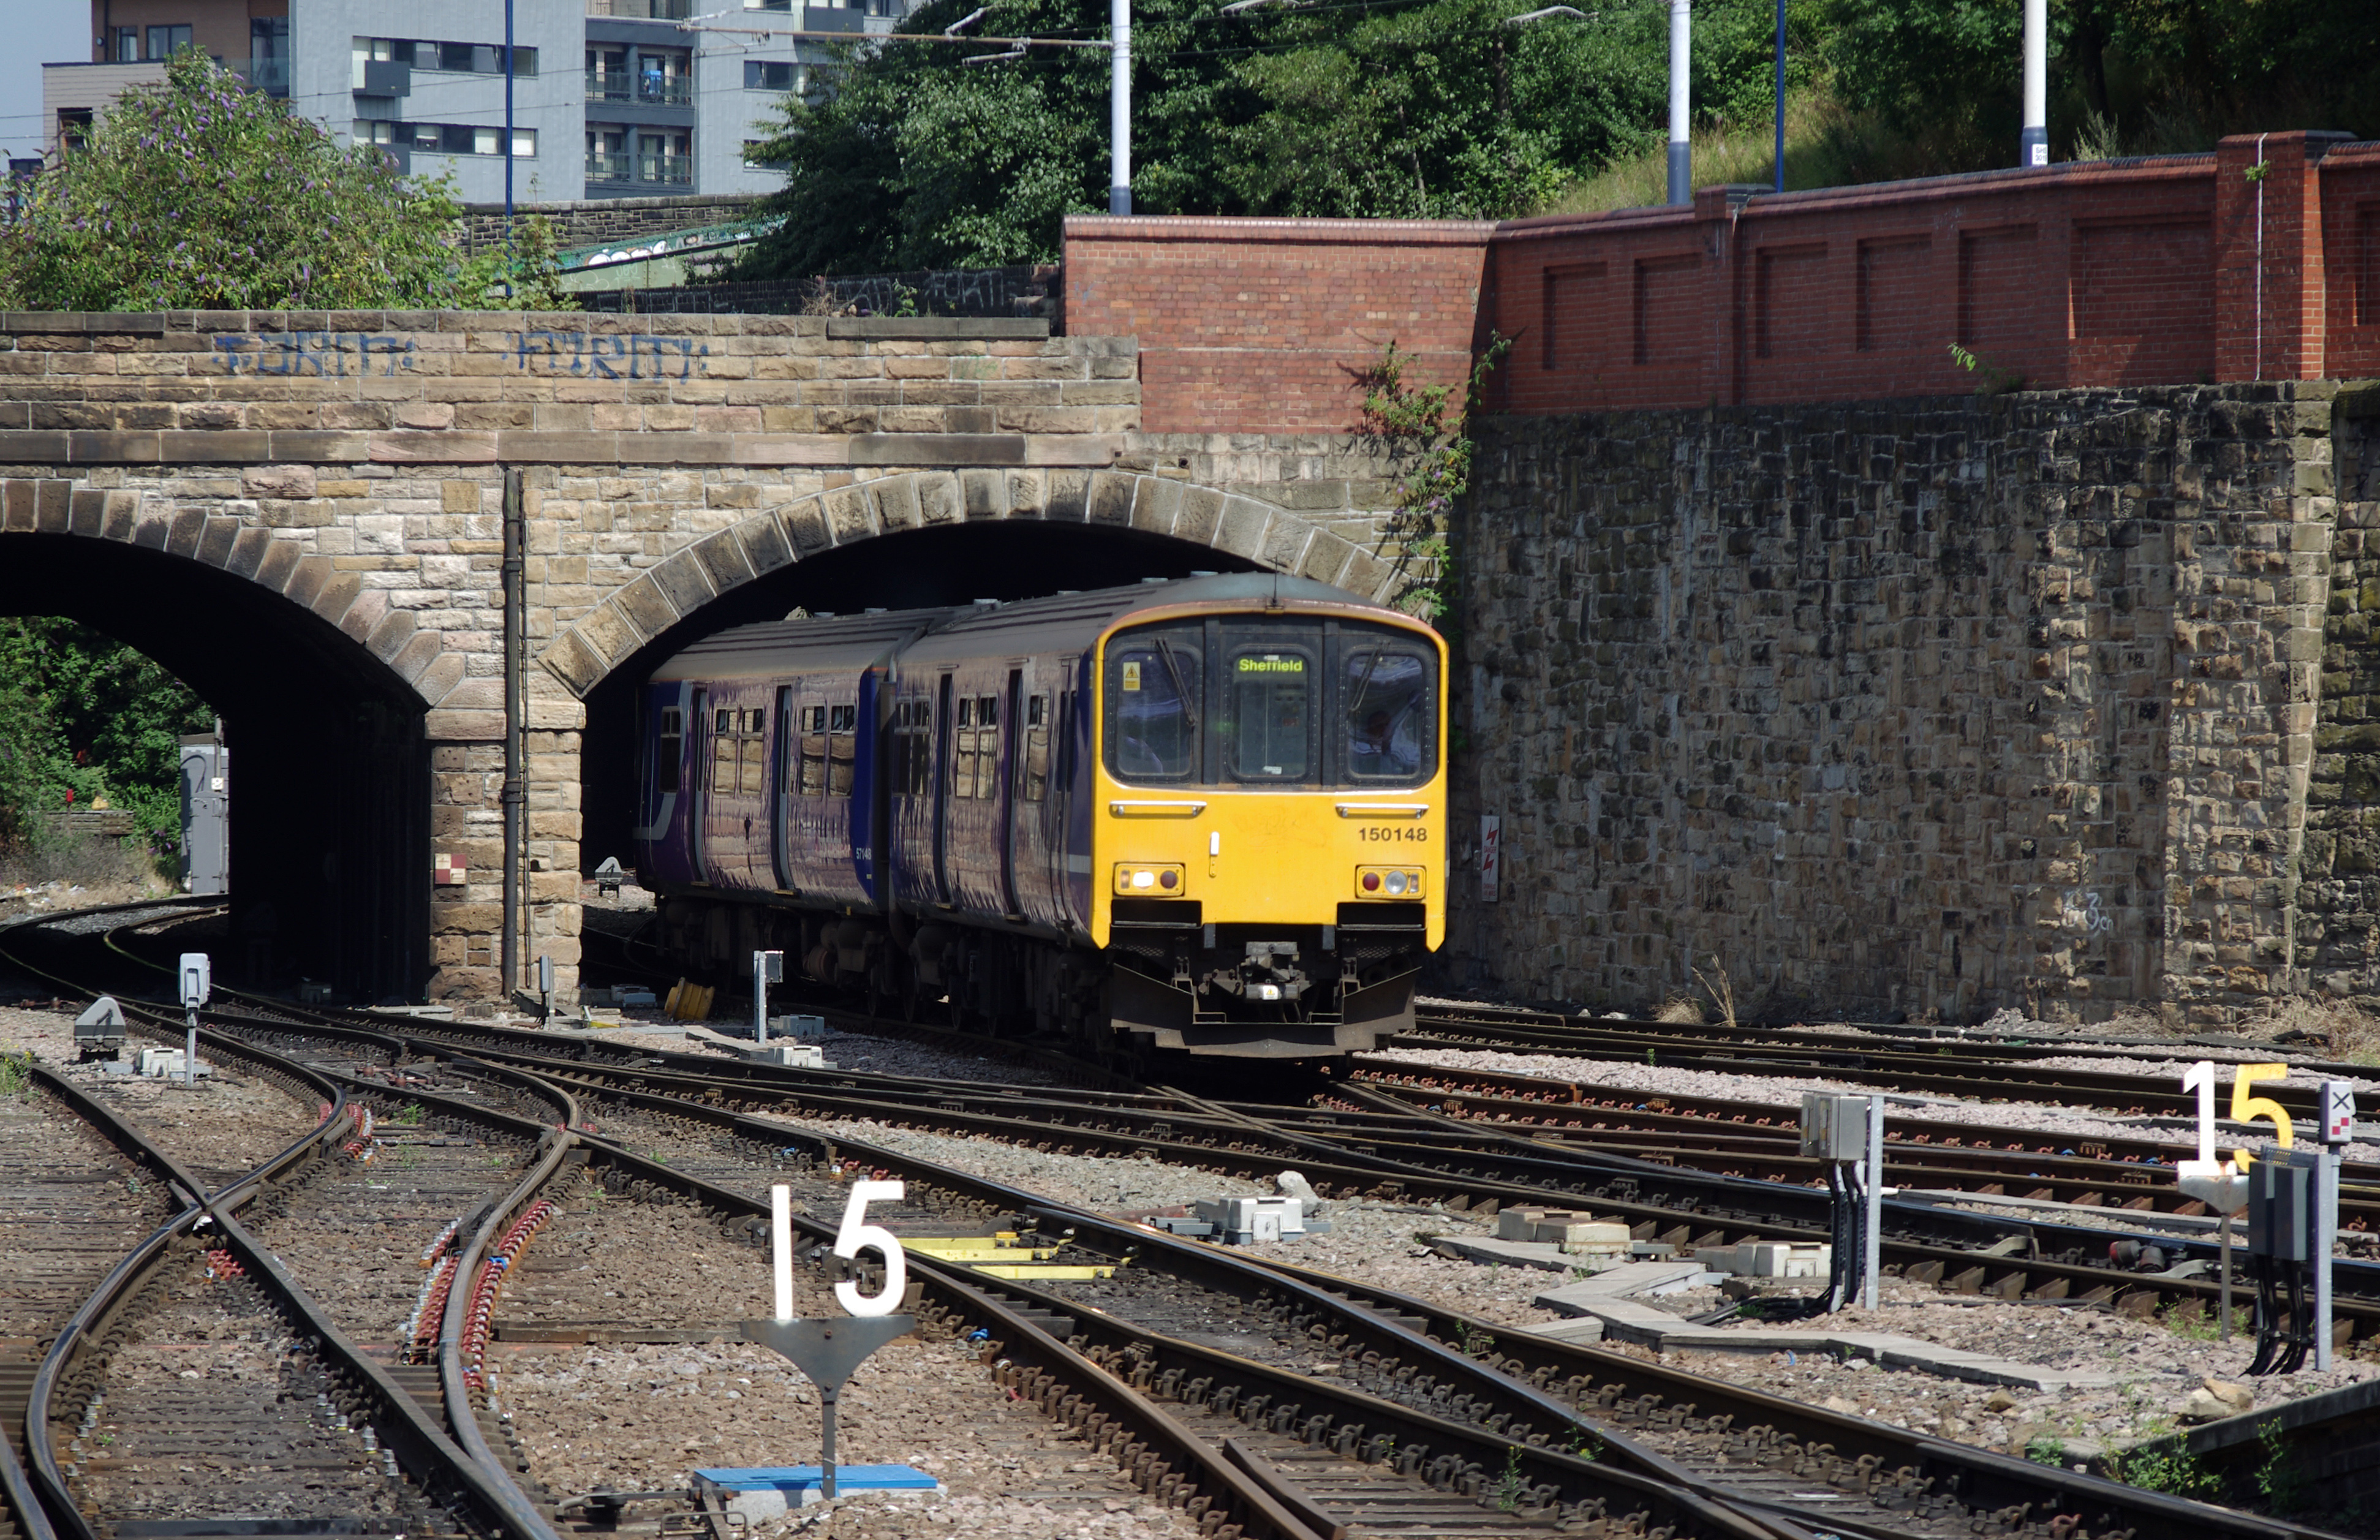 Sheffield station MMB 02 150148